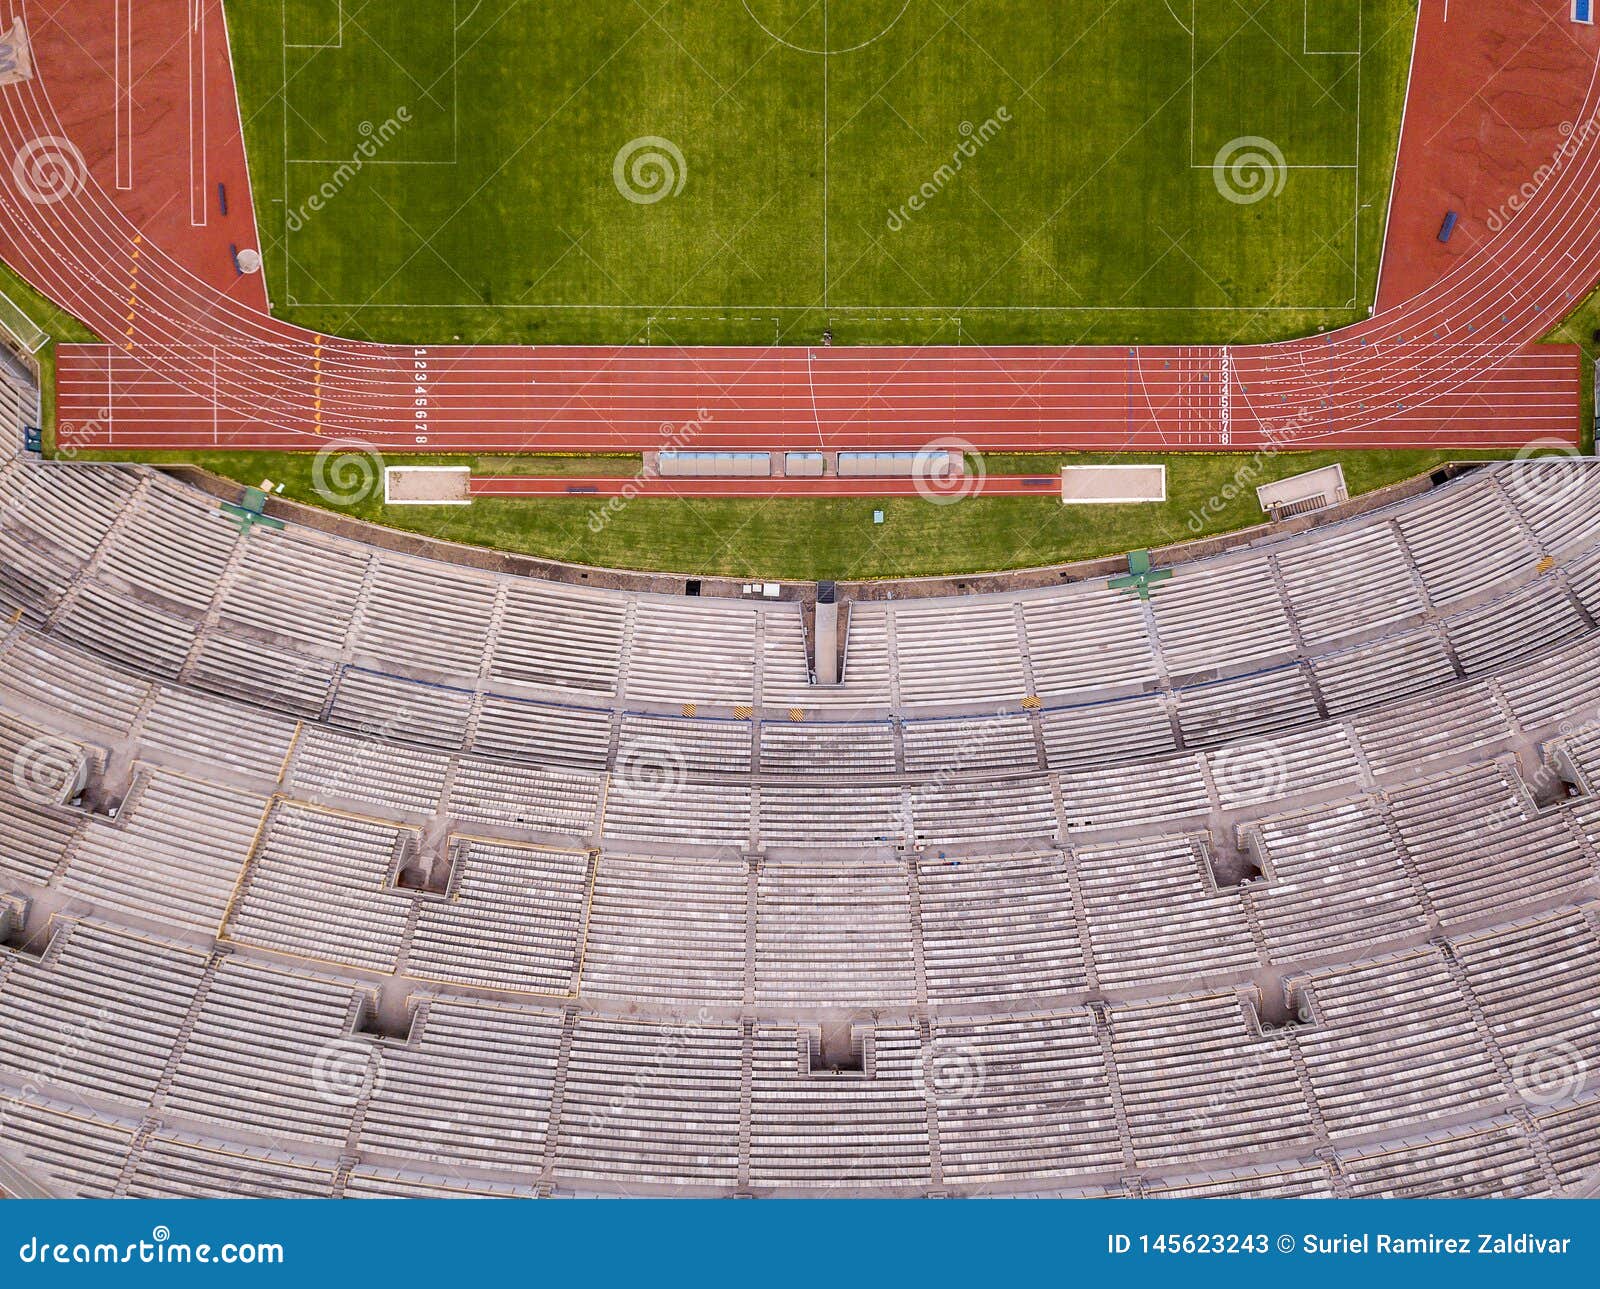 soccer stadium  aerial view